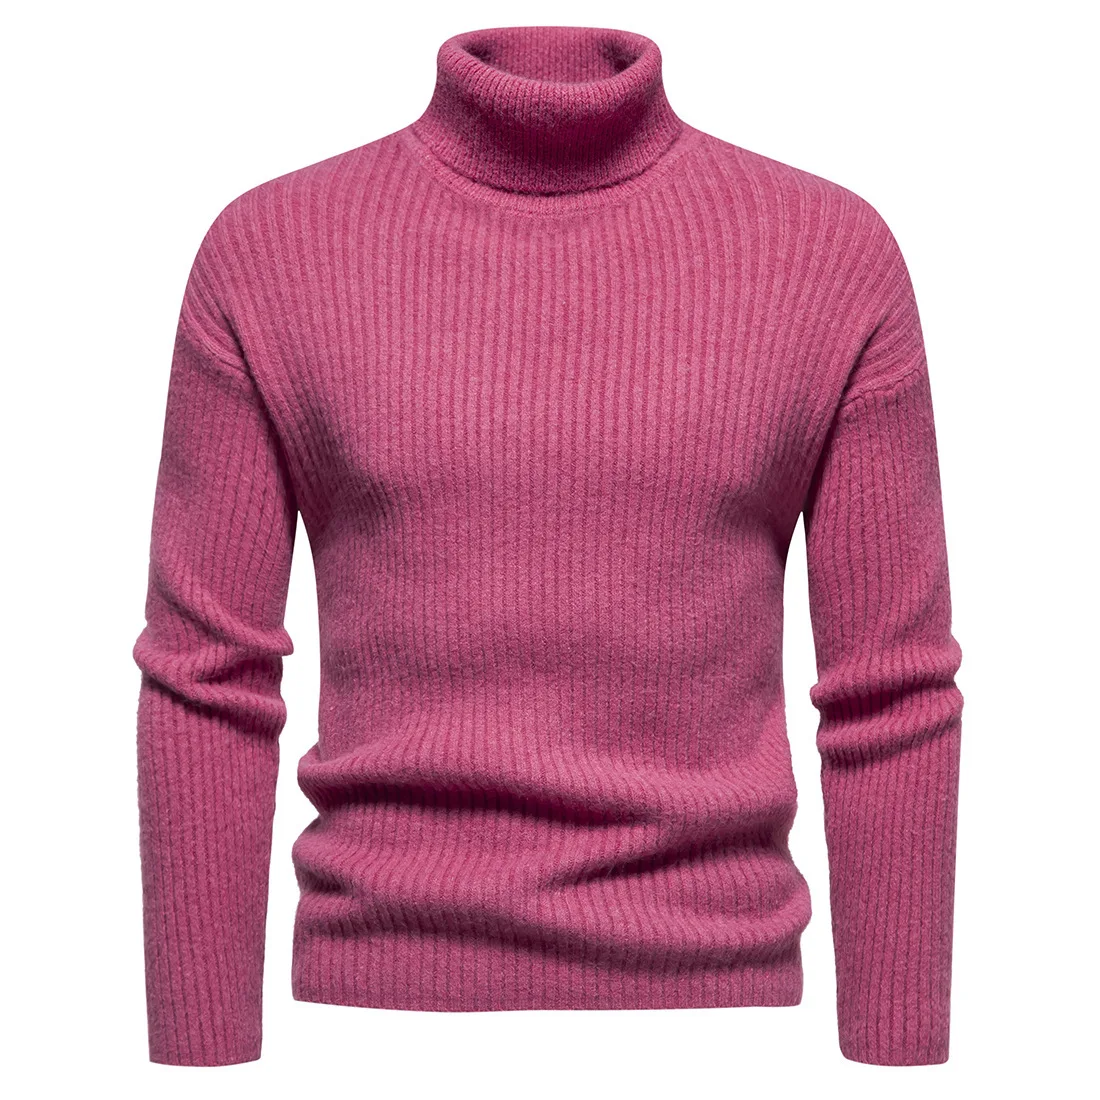 Мужской новый свитер с высоким воротником Черный пуловер с длинными рукавами Молодежный свитер Vitality Модный мужской свитер Пуловер Вязаный свитер